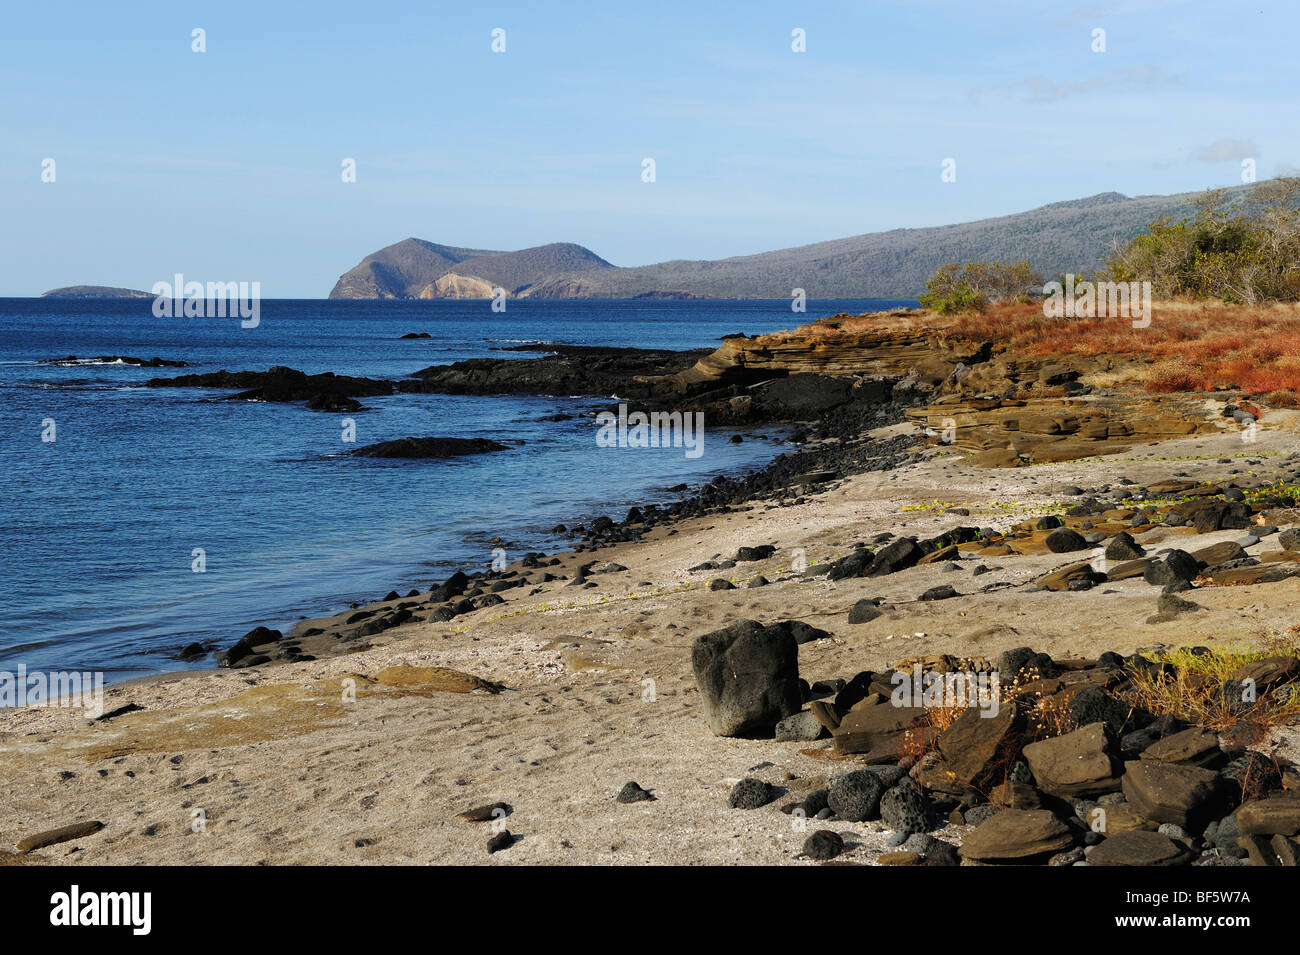 Puerto Egas Bay, Santiago Island, Galapagos Islands, Ecuador, South America Stock Photo